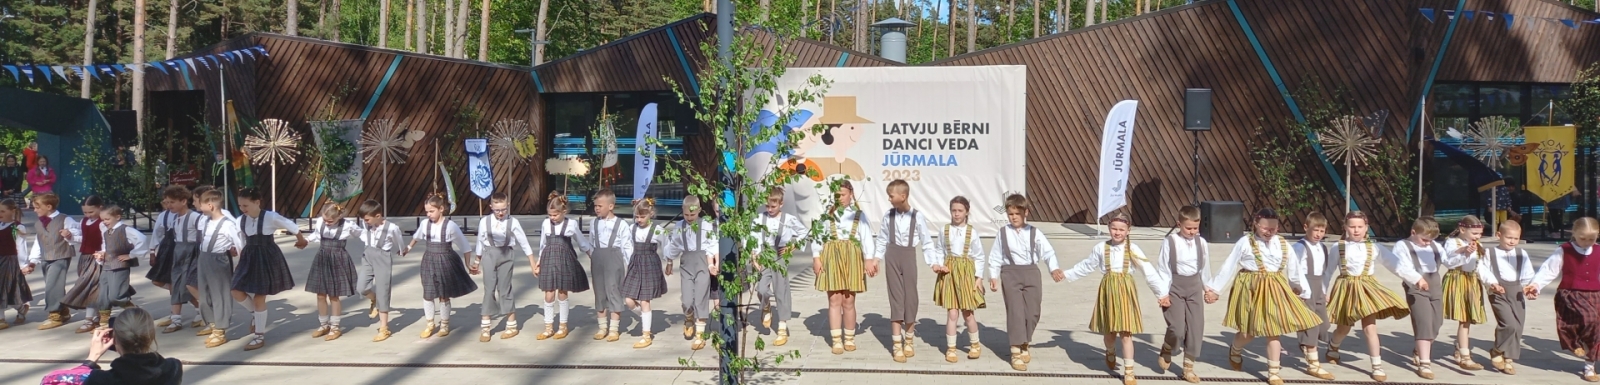 Attēls: Latvju bērni danci veda Jūrmalā svētku dalībnieki